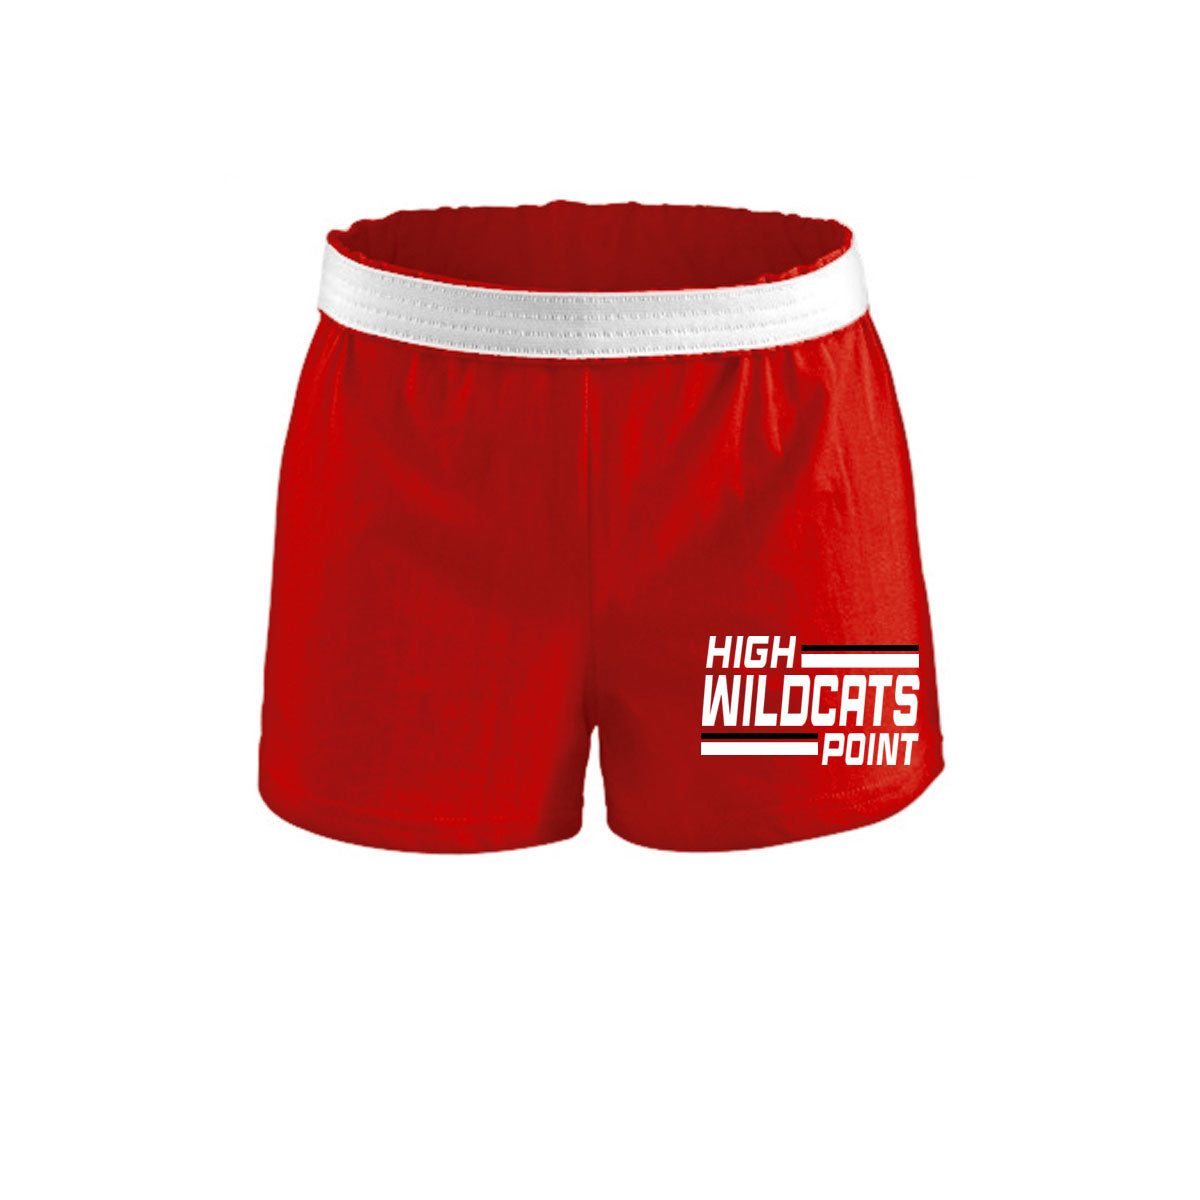 Wildcats Cheer Design 4 Shorts